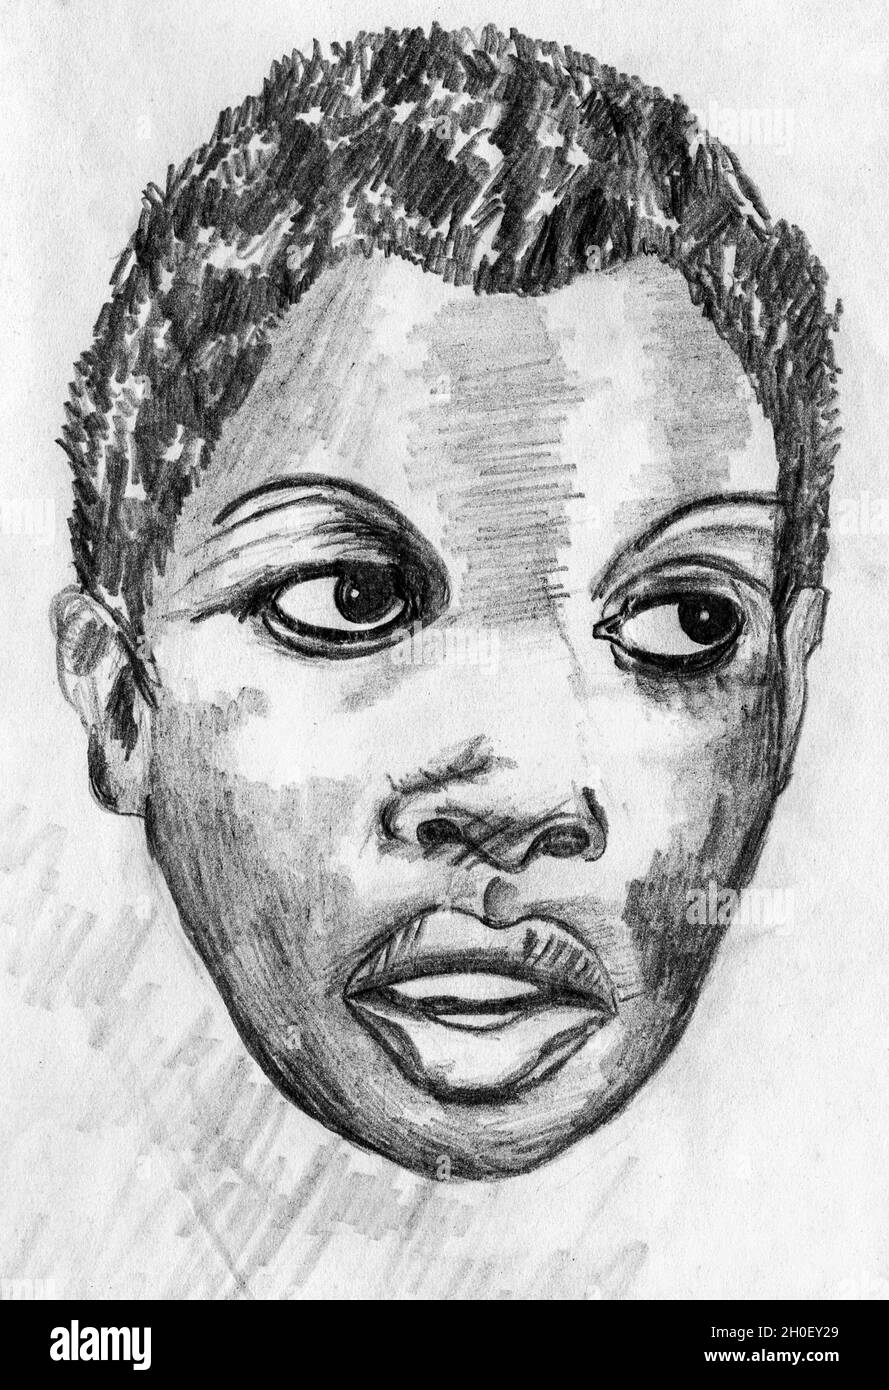 Illustration artistique d'un visage afro-américain remarquable et beau qui regarde de côté.Dessin au crayon. Banque D'Images